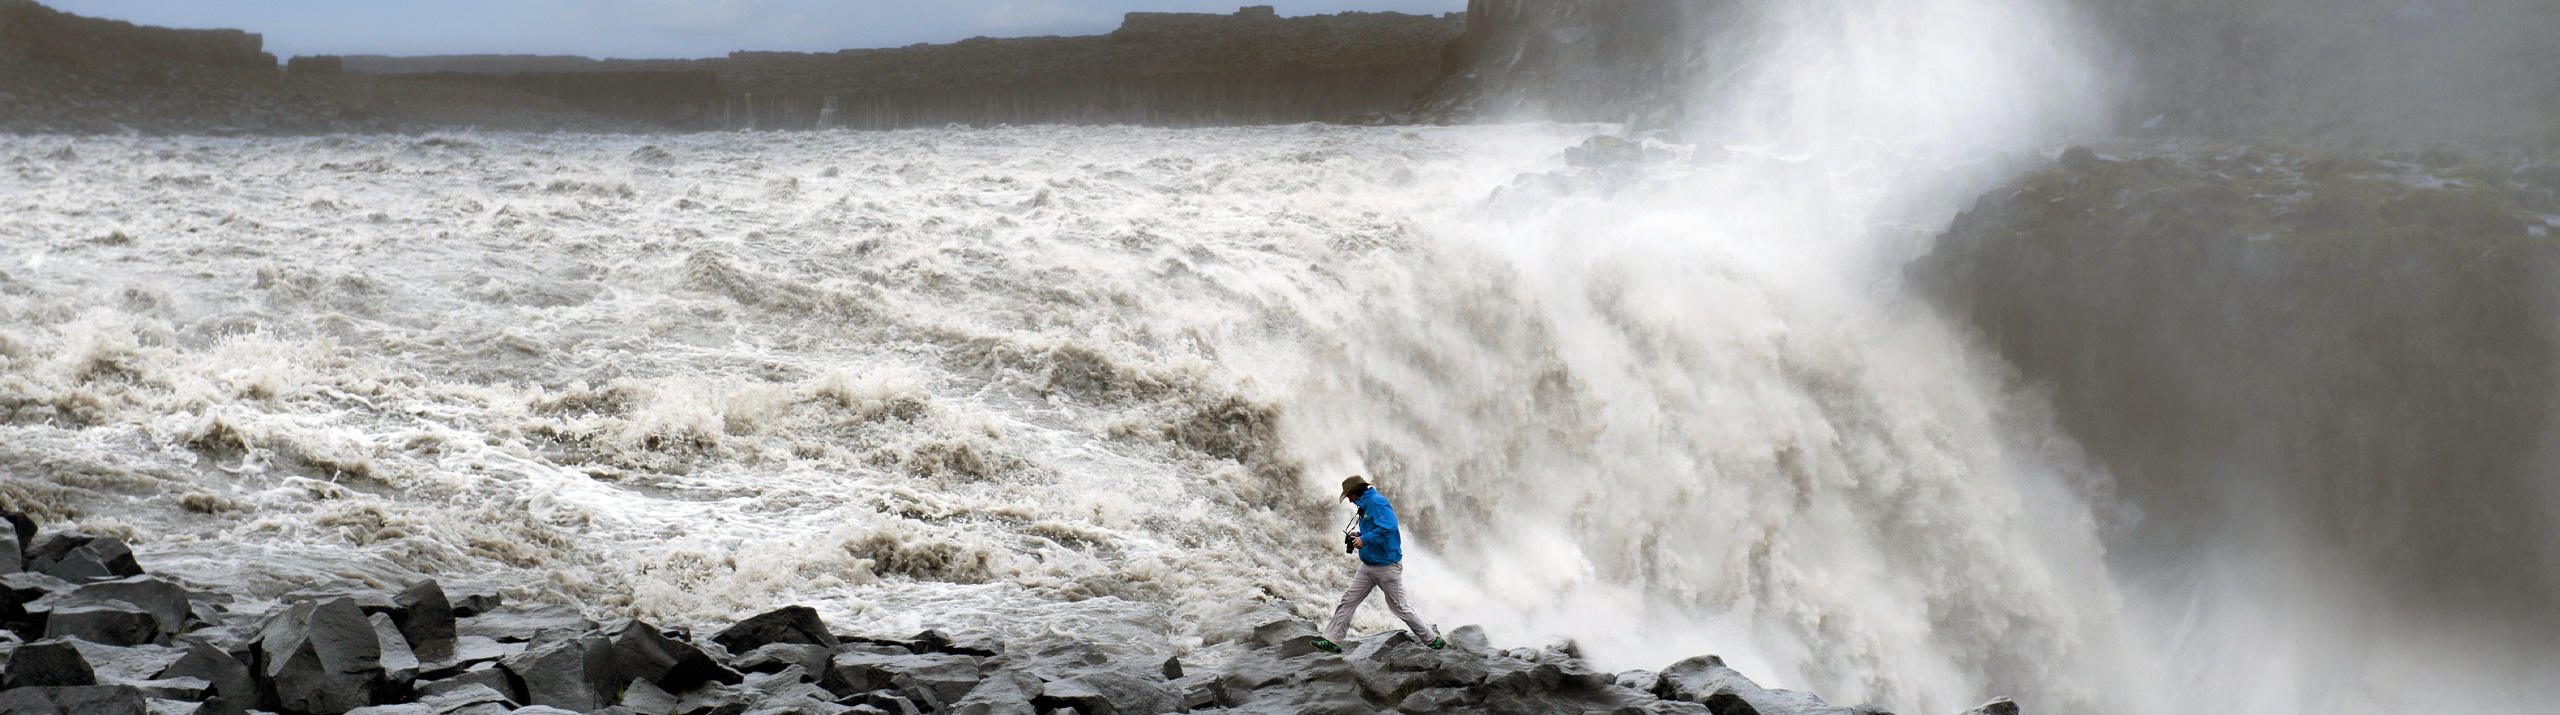 Dettifoss vandfaldet i Nordisland - vandfald i Island